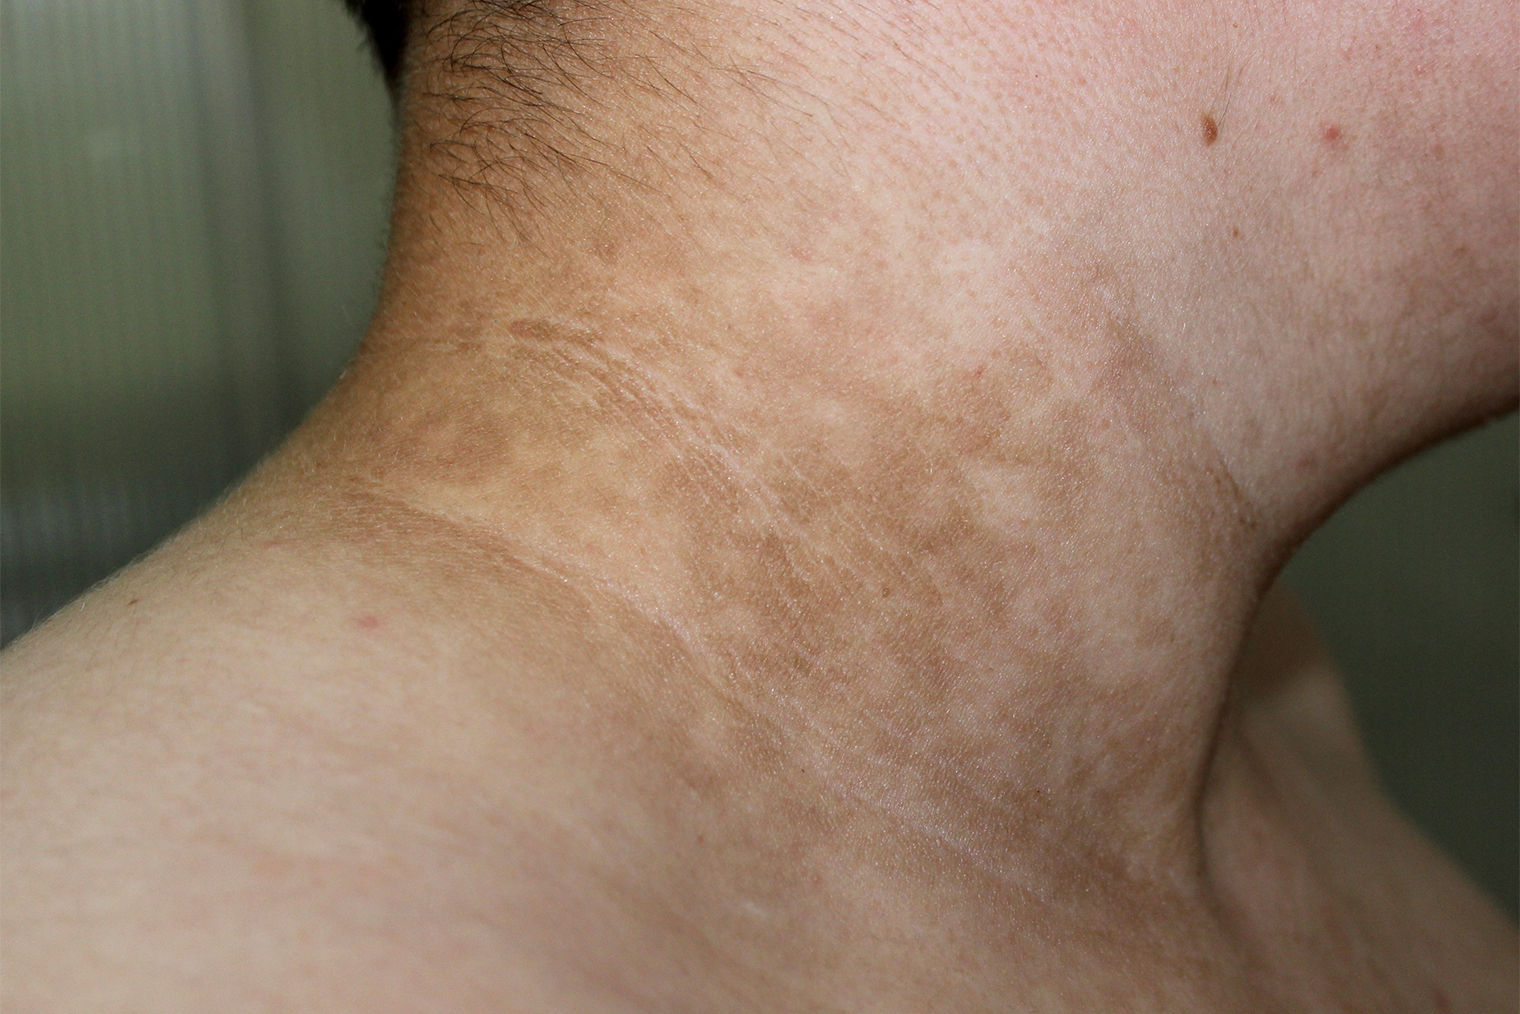 Черный акантоз у мужчины с диабетом. Источник: Dermatology11 / Shutterstock